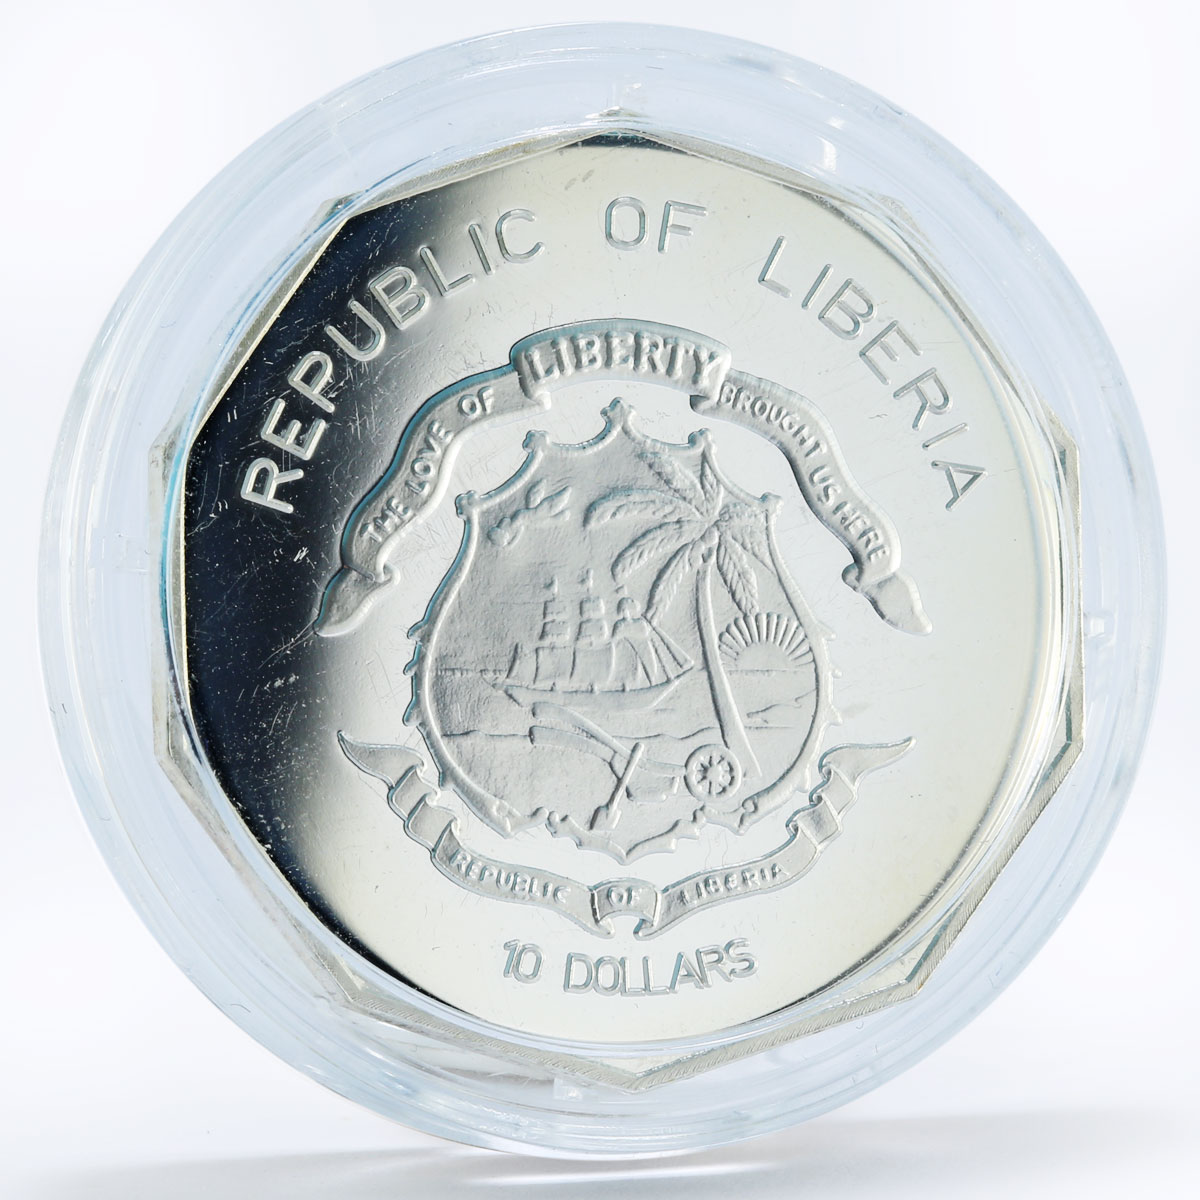 Liberia 10 dollars Millennium Hippocrates Medicine Emblem silver coin 2000